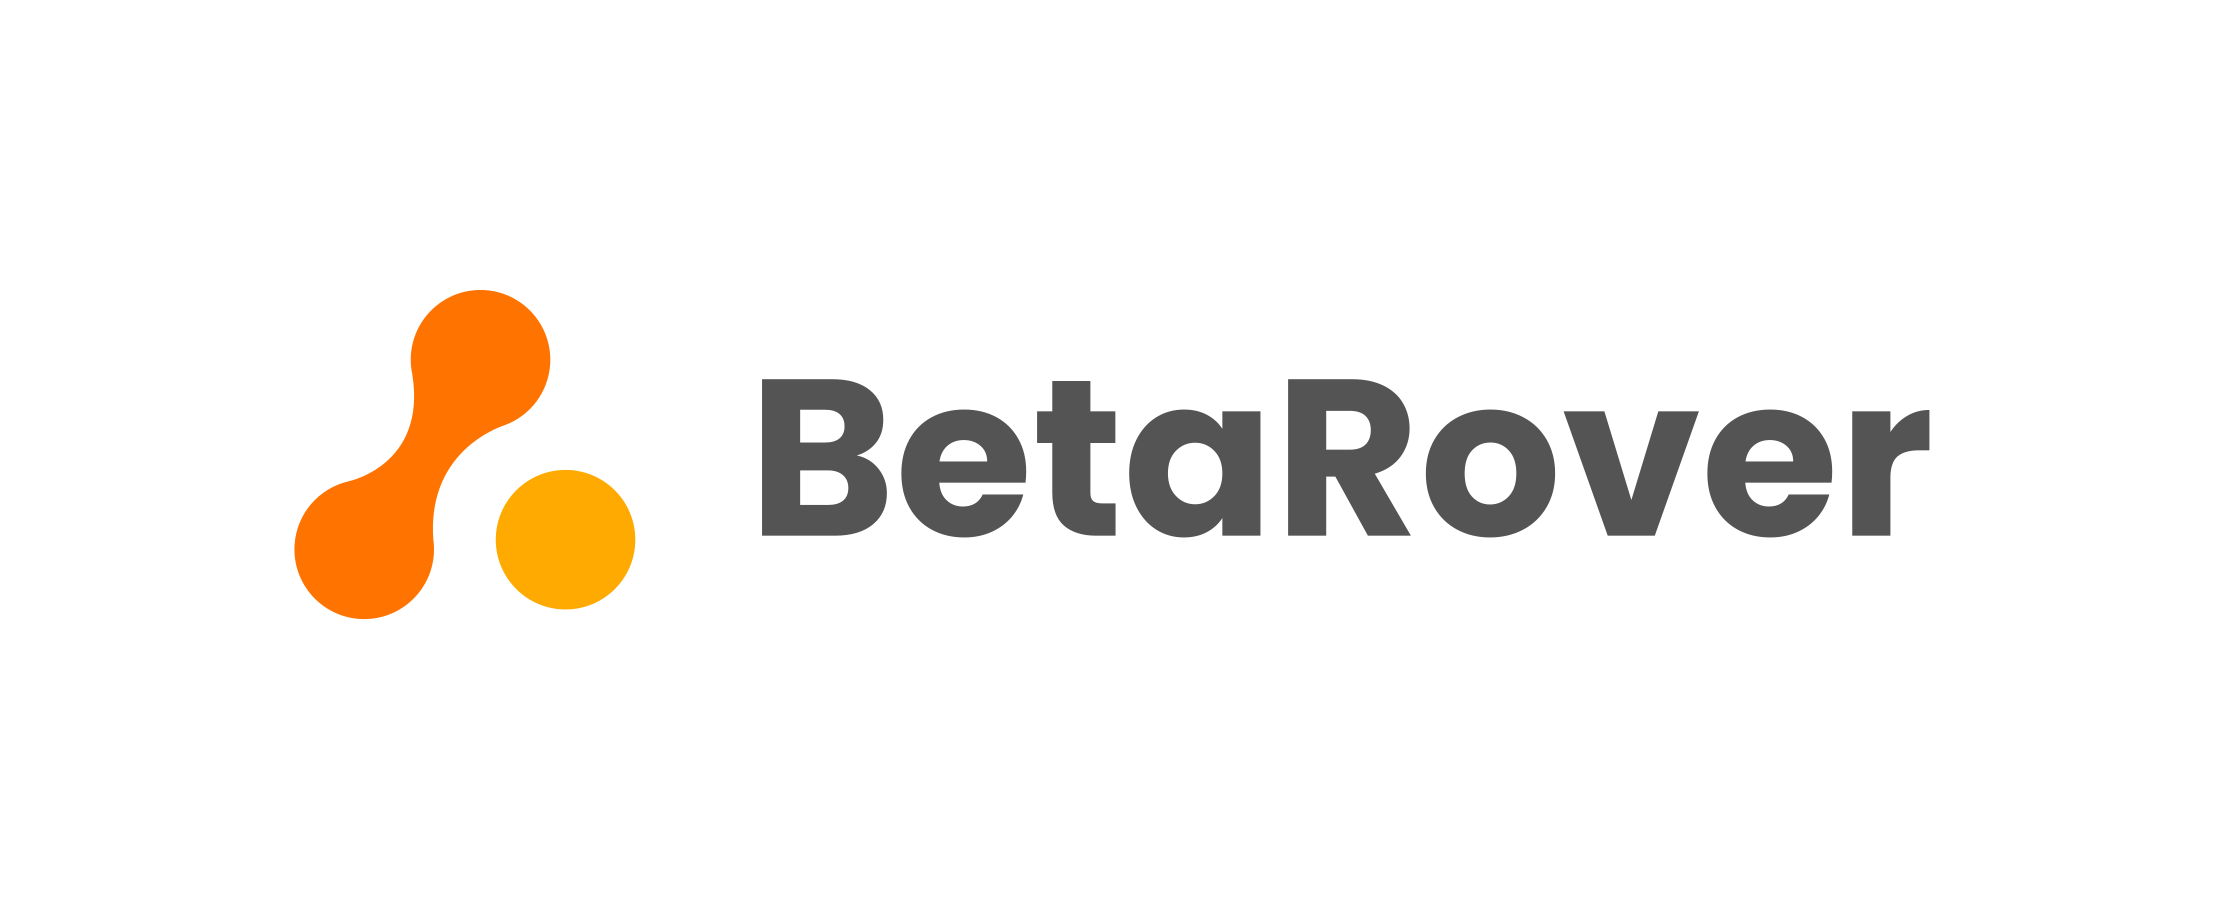 BetaRover (U14A THOMAS 2022/23)